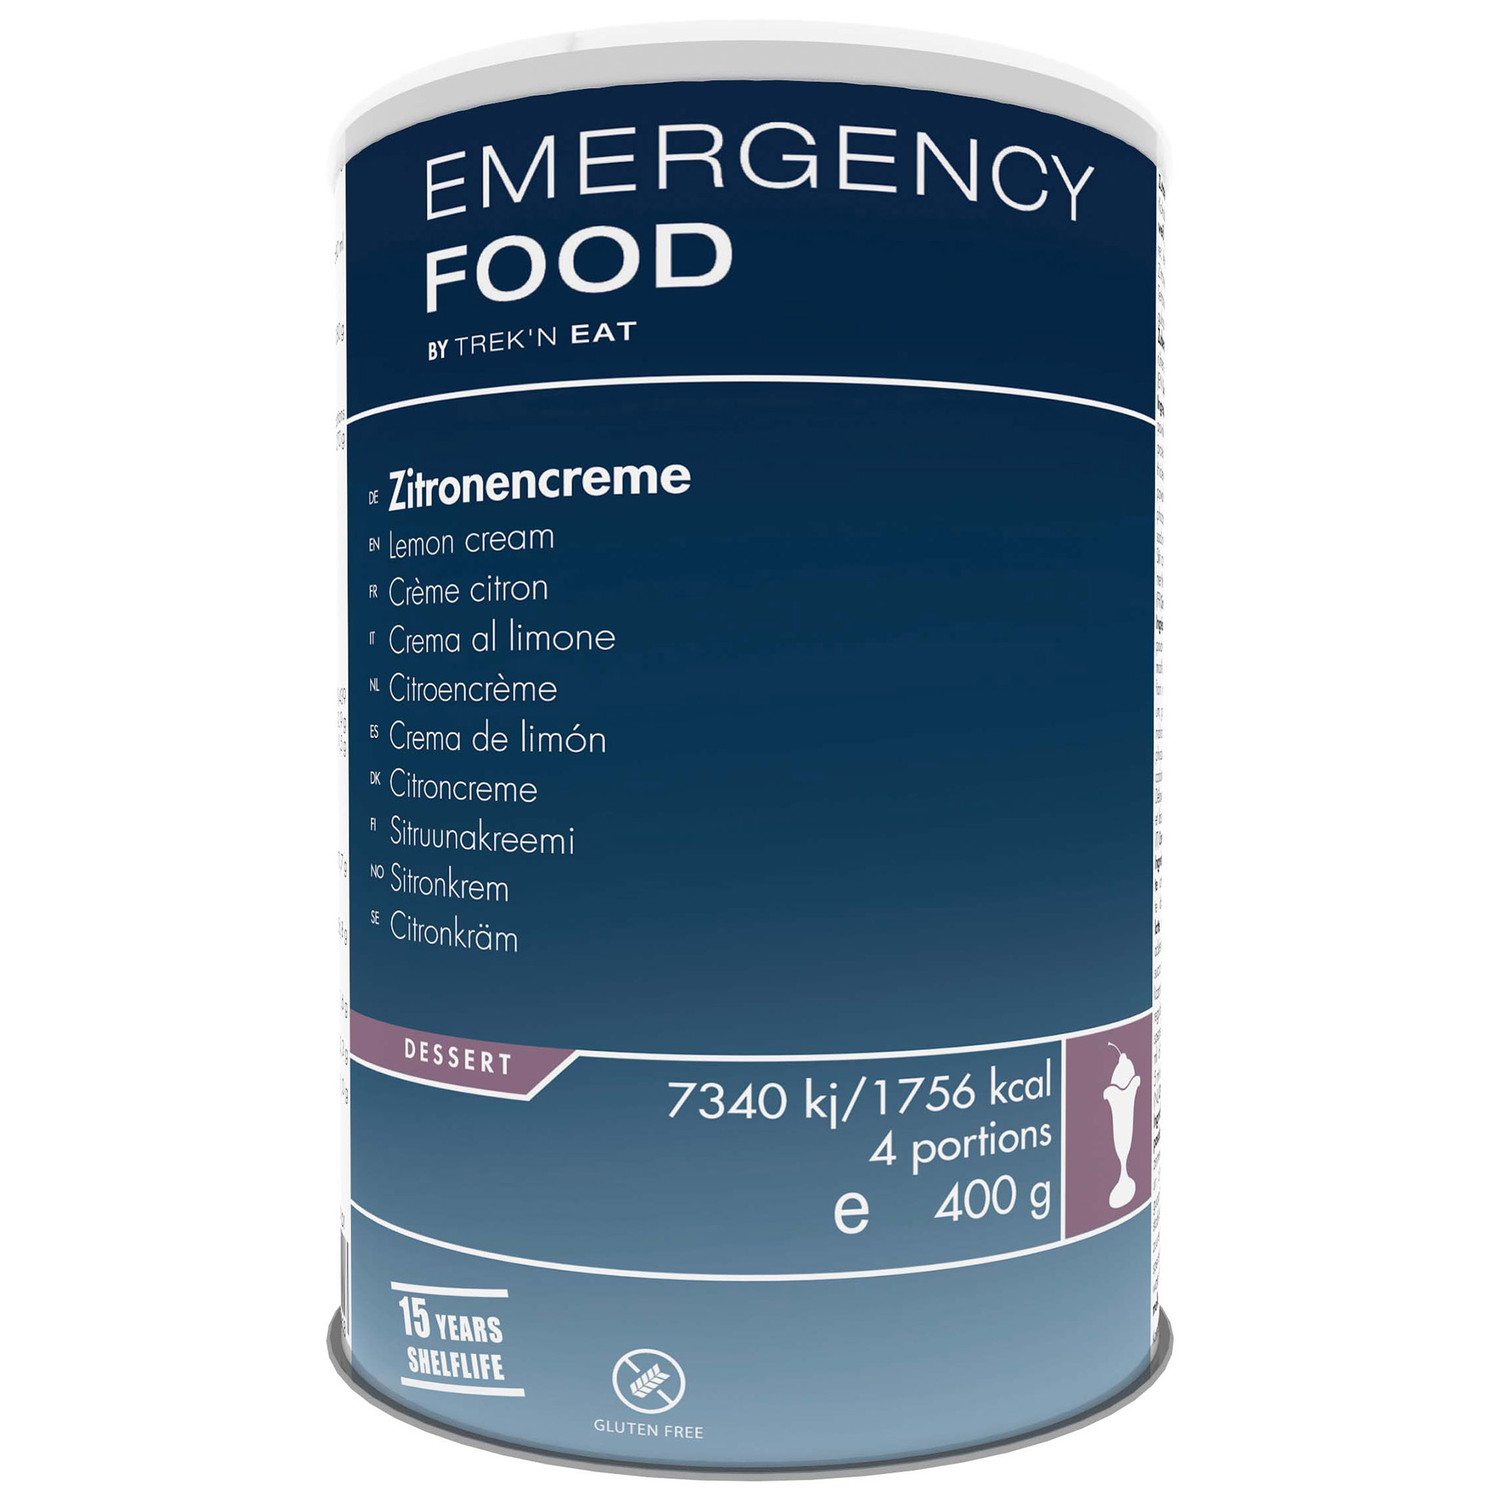 Emergency Food Zitronencreme